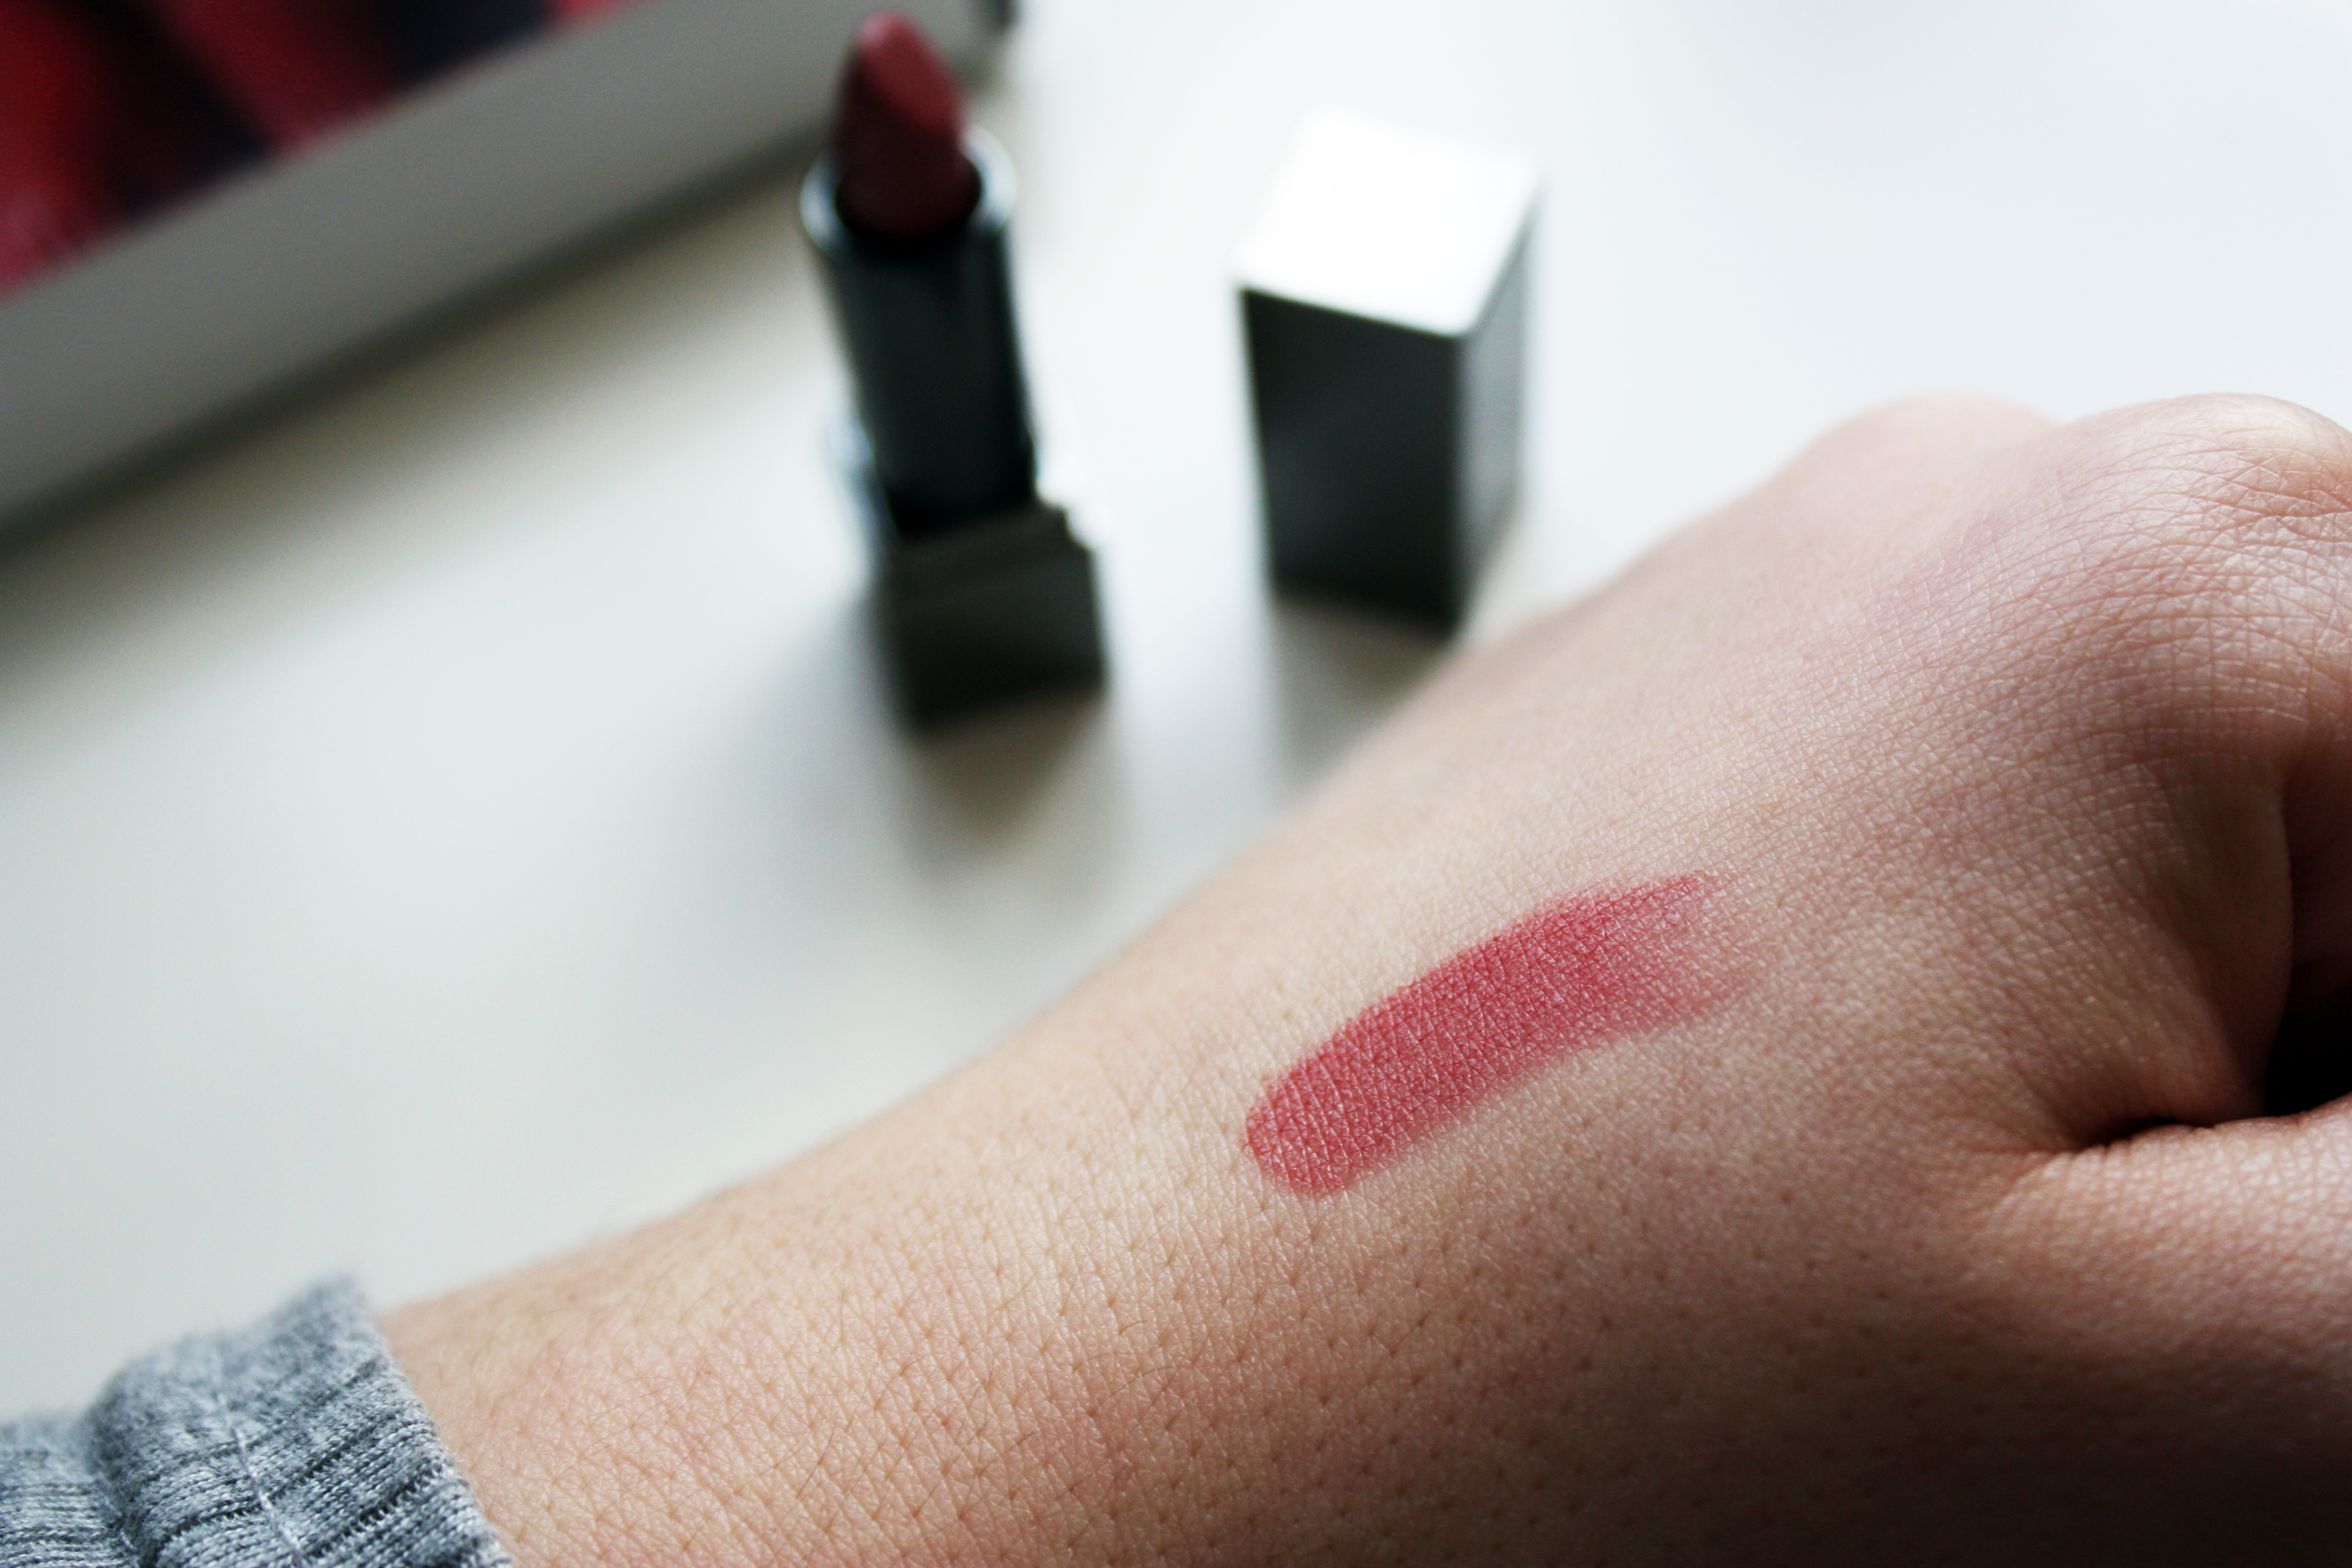 burberry sepia lipstick